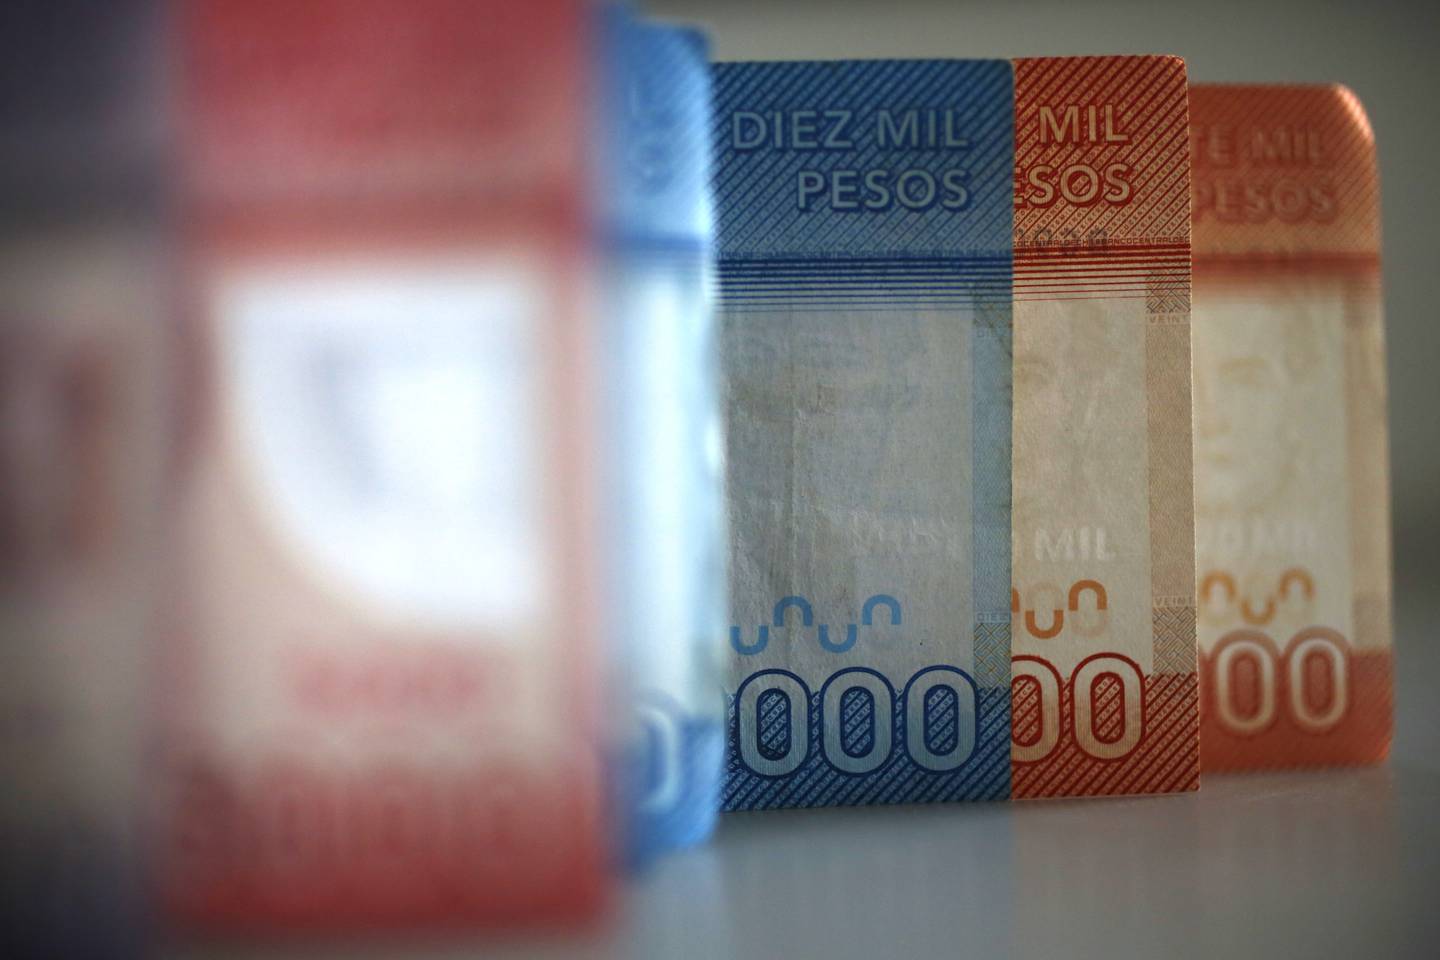 Billetes chilenos de distintos montos parados sobre una superficie plana en una fila.